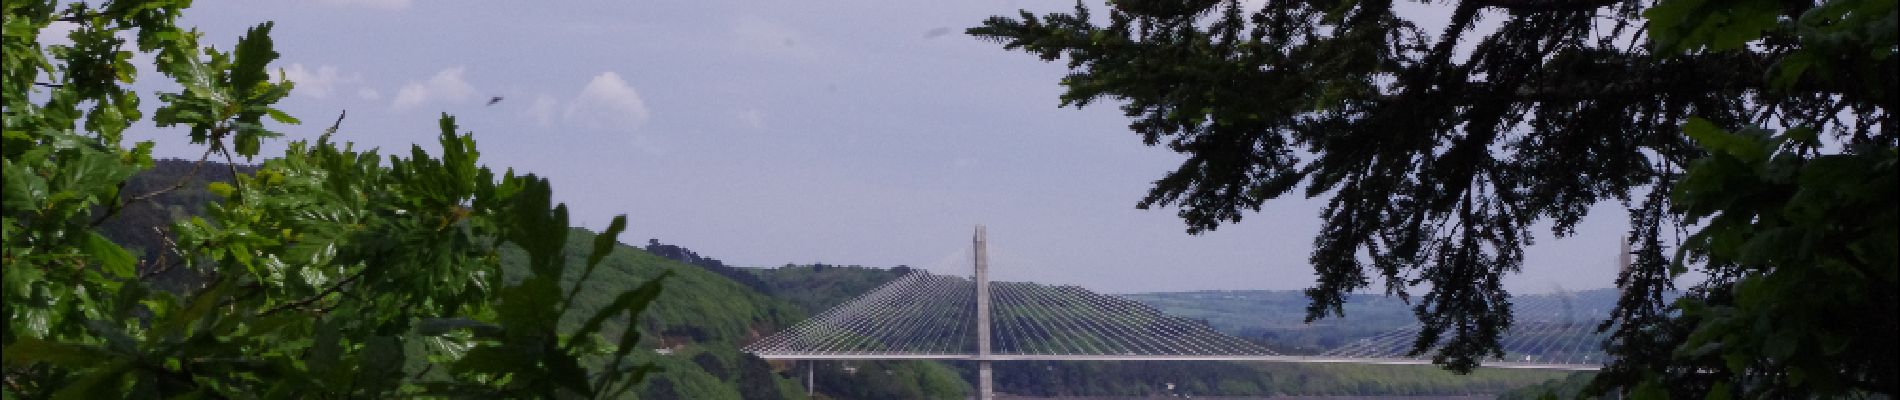 POI Landévennec - Vue sur le pont de Térénez - Photo